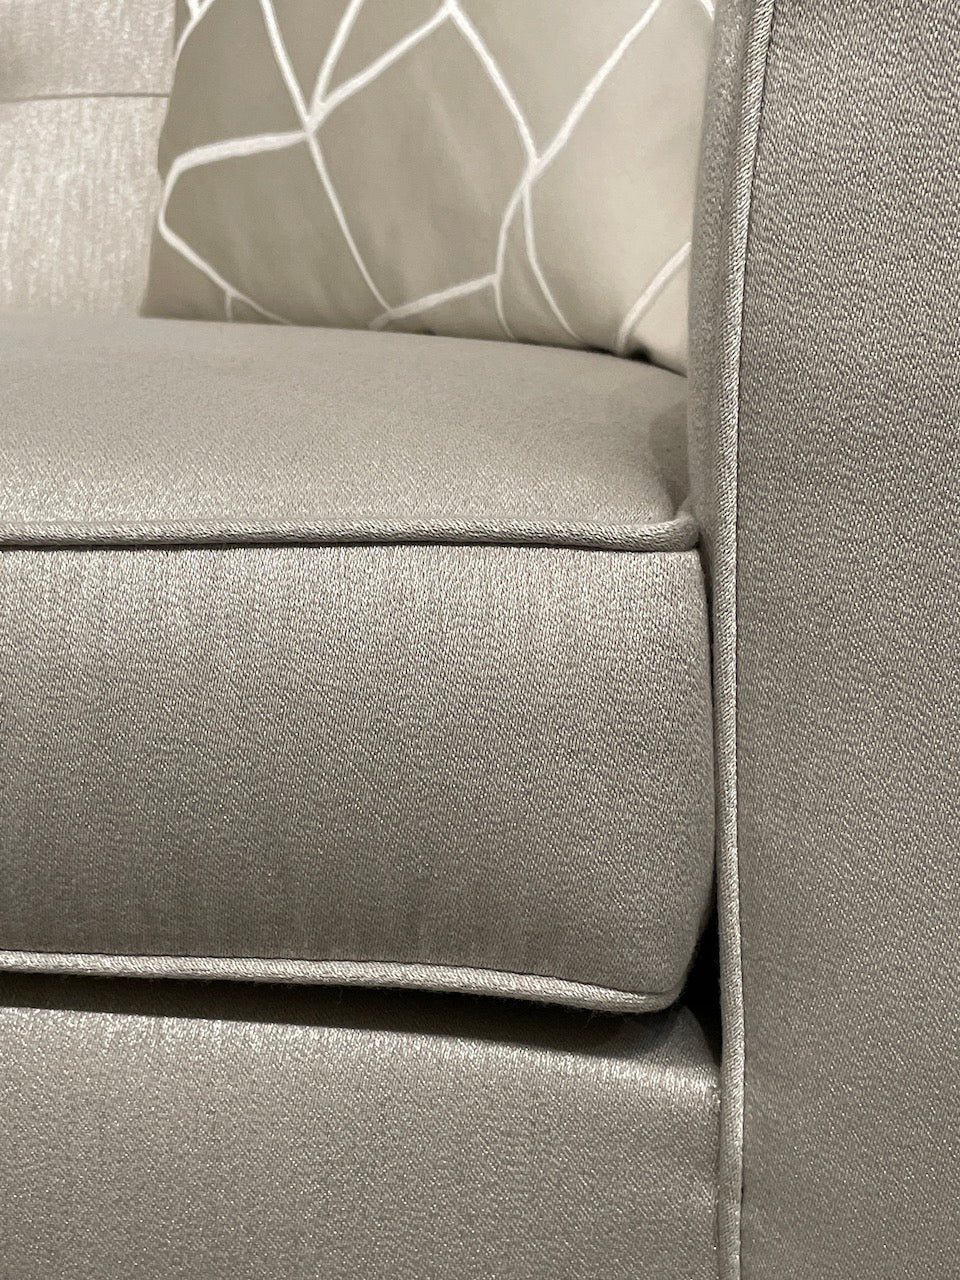 Diamanti 1 Seater - Future Classics Furniture